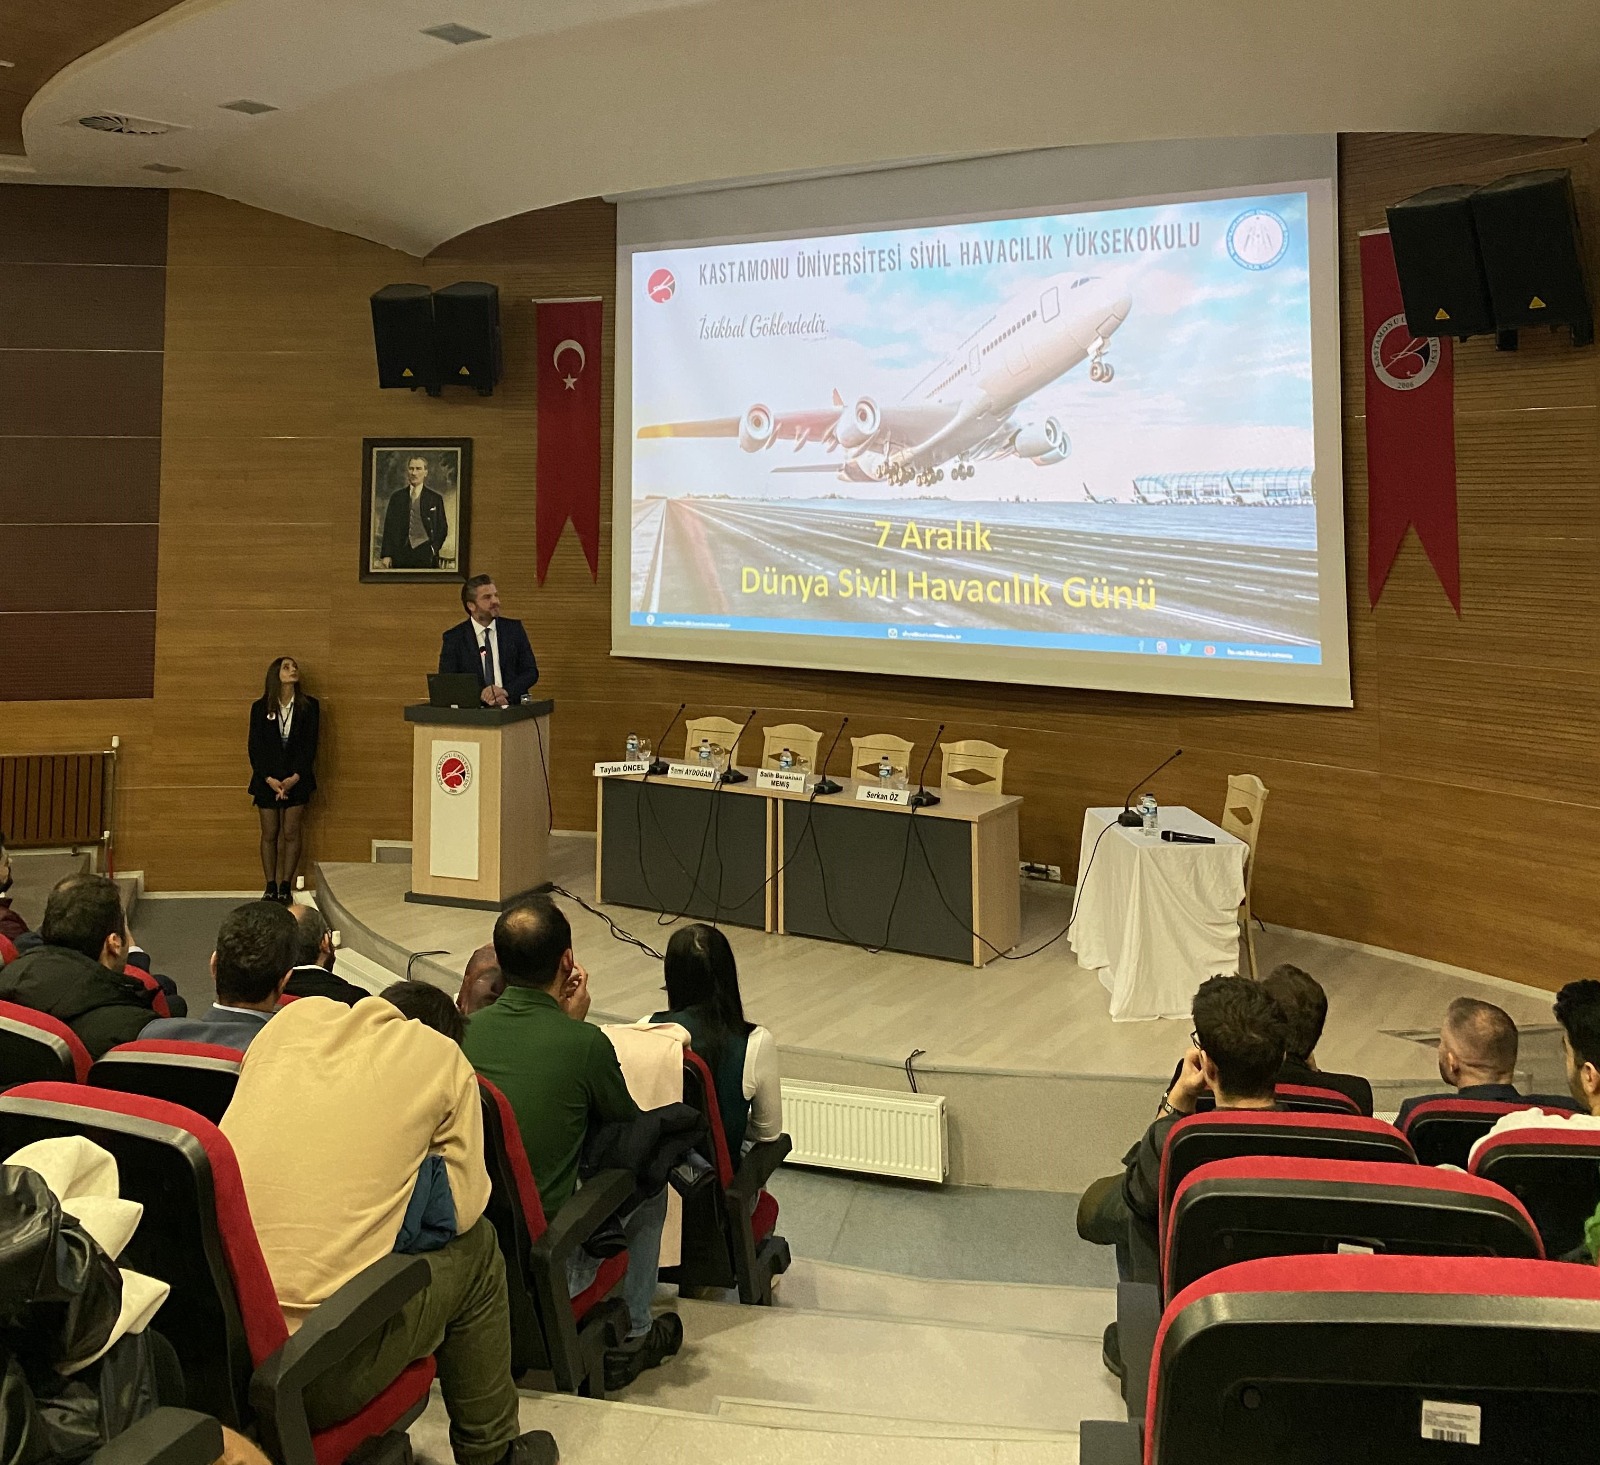 Kastamonu Üniversitesi Sivil Havacılık Yüksekokulu ve Havacılık Kulübü öğrencileri 7 Aralık Dünya Sivil Havacılık Gününü kutladı